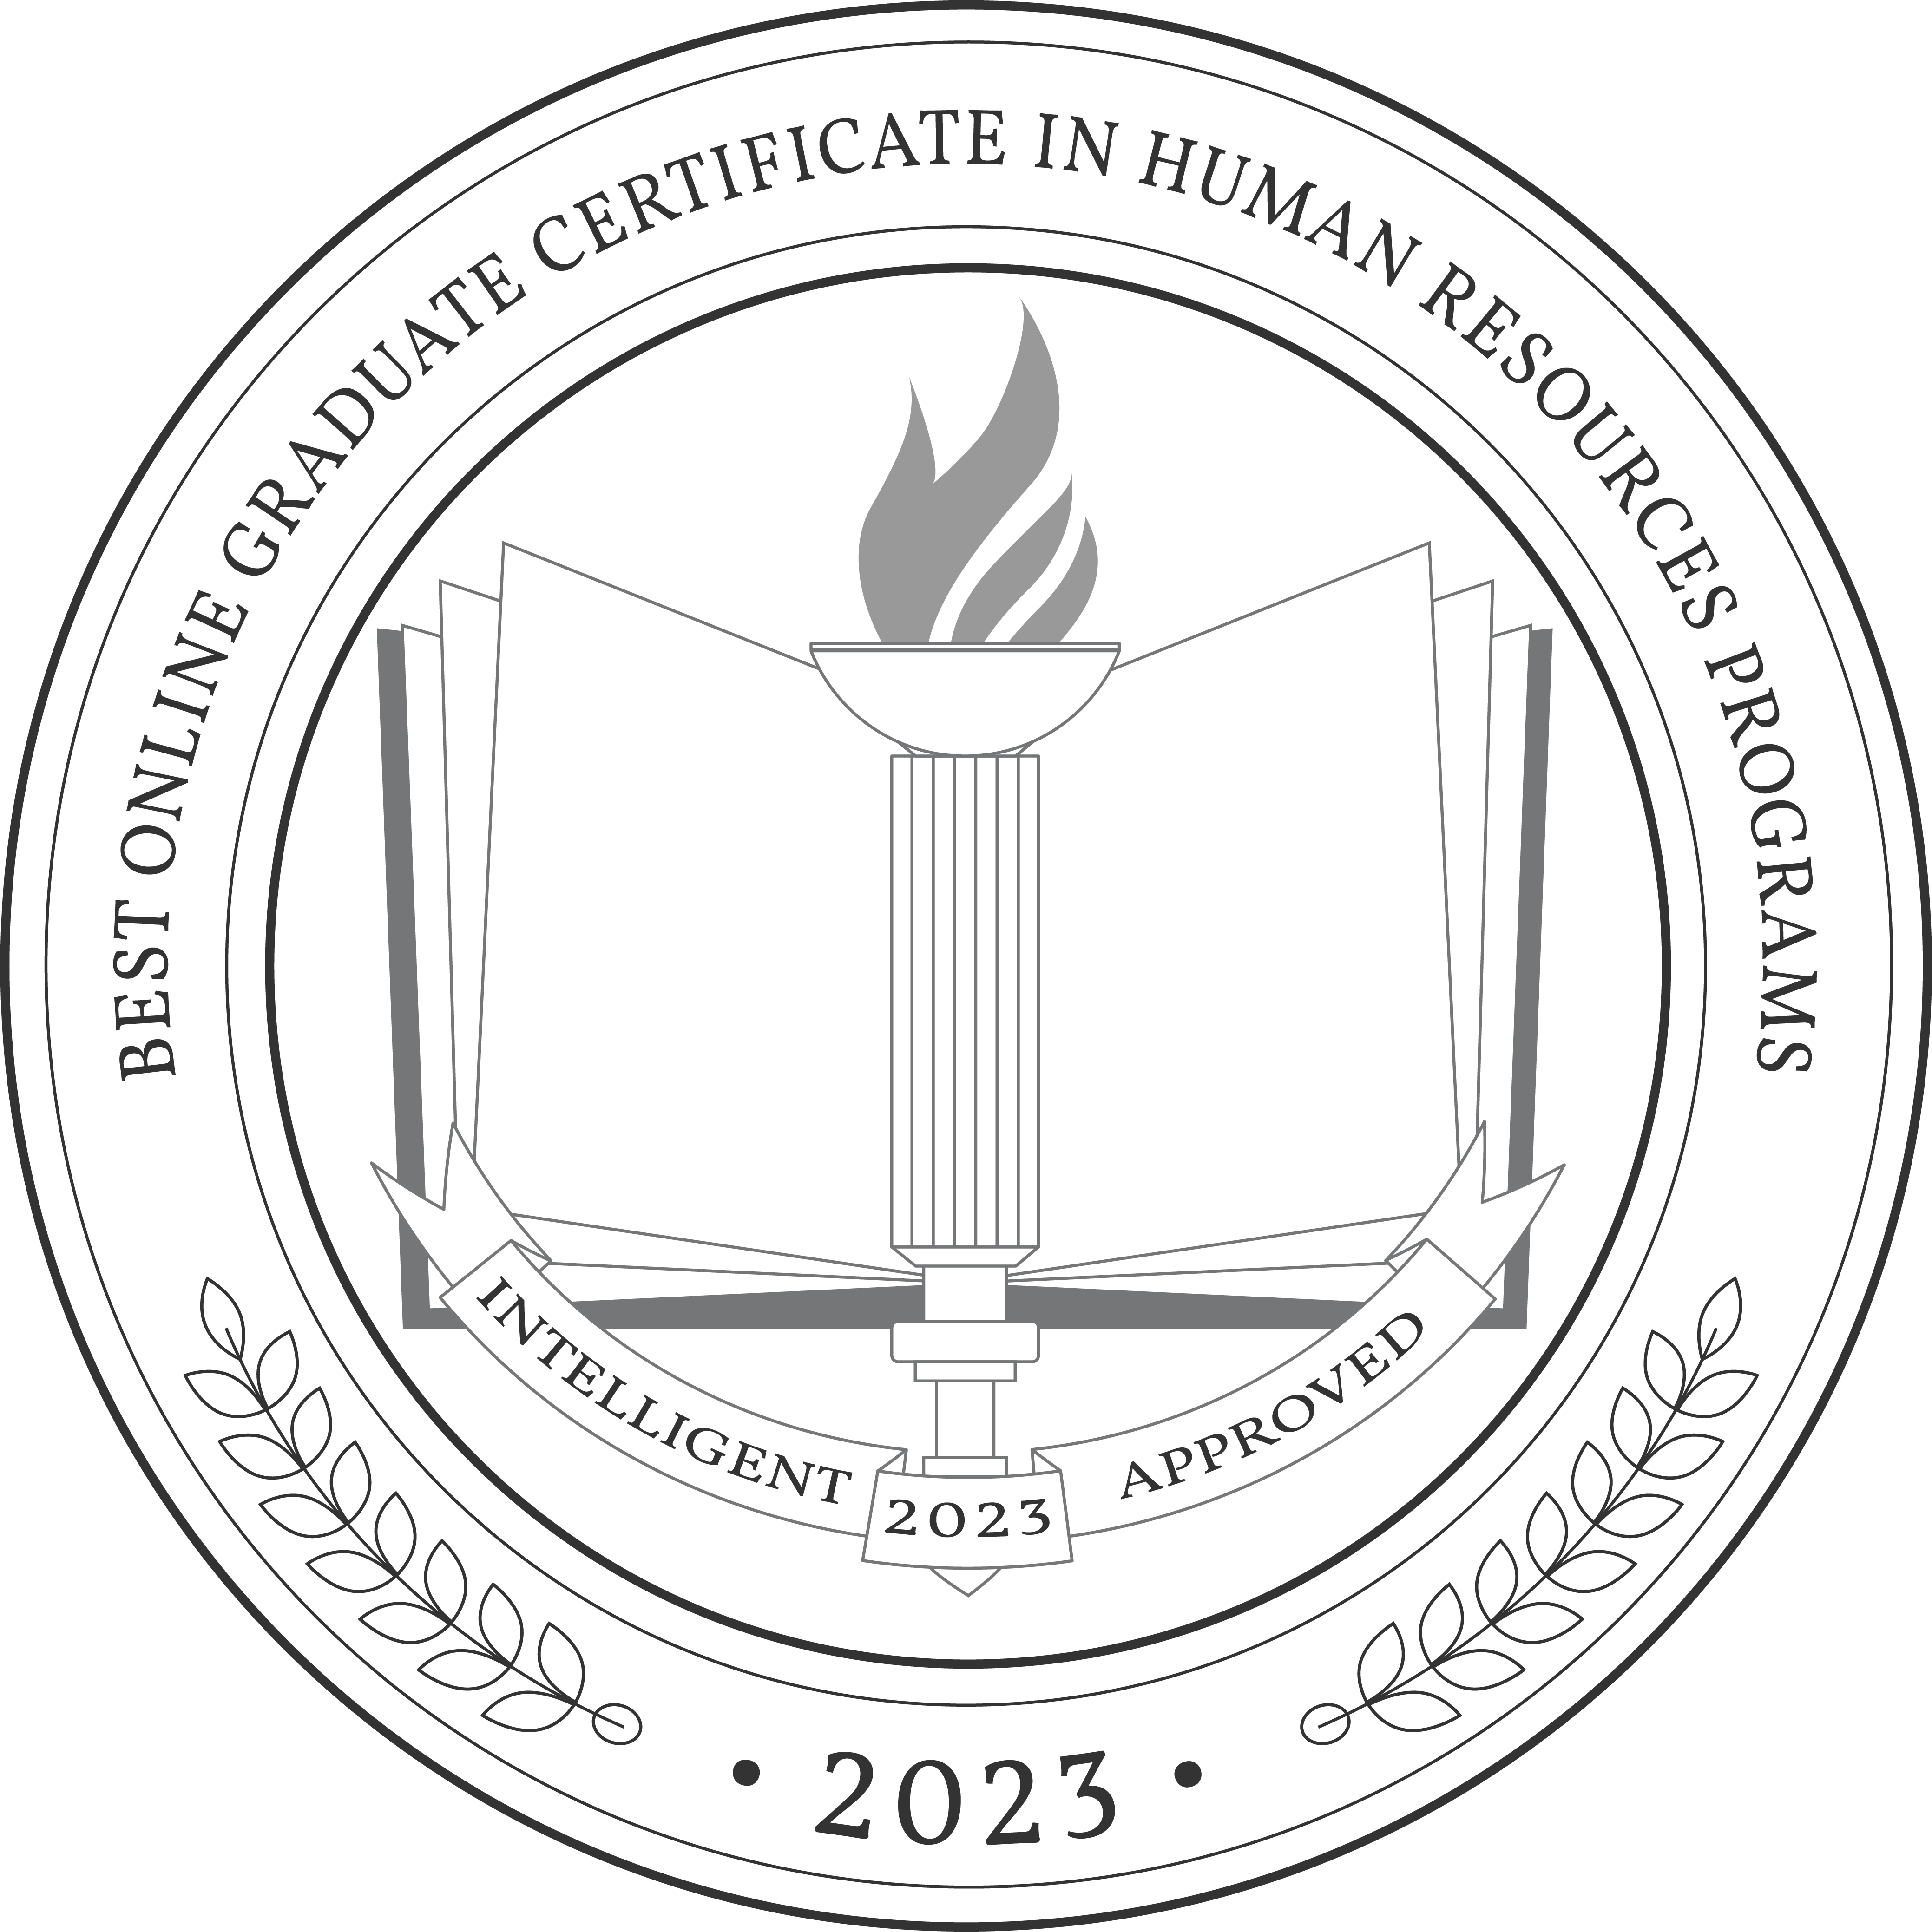 Best Online Graduate Certificate in Human Resources Programs badge